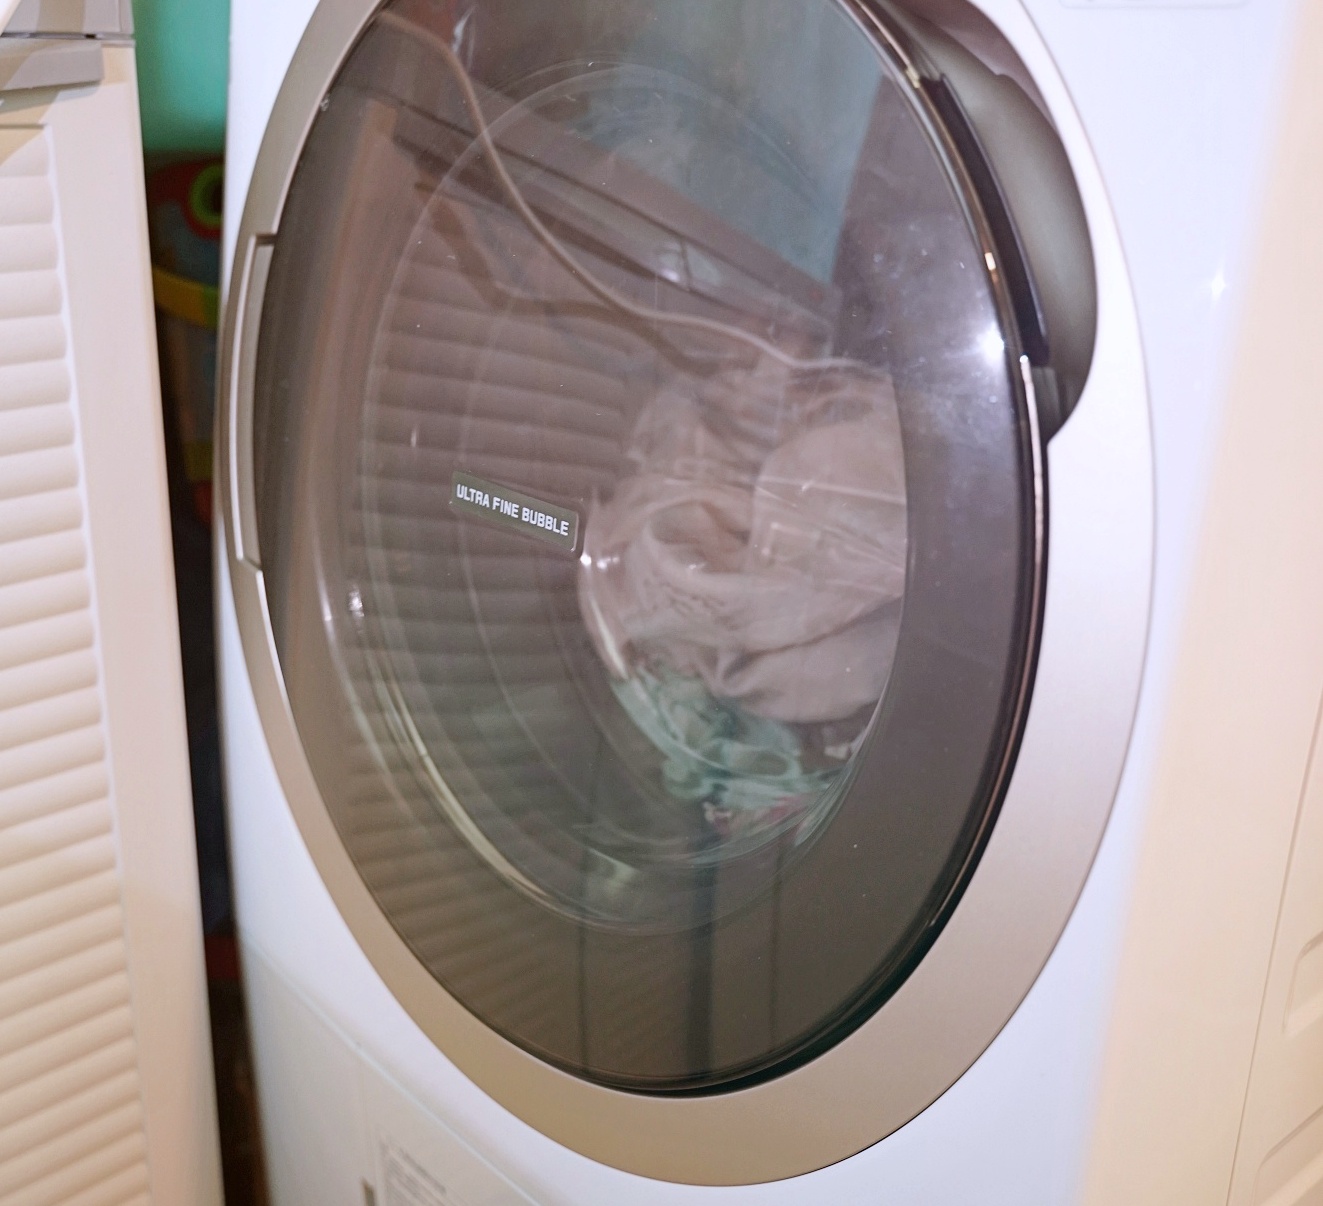 得意洗衣膠囊｜運動衣也可以使用的洗衣膠囊｜四效合一洗衣膠囊平均單顆只需6.6元